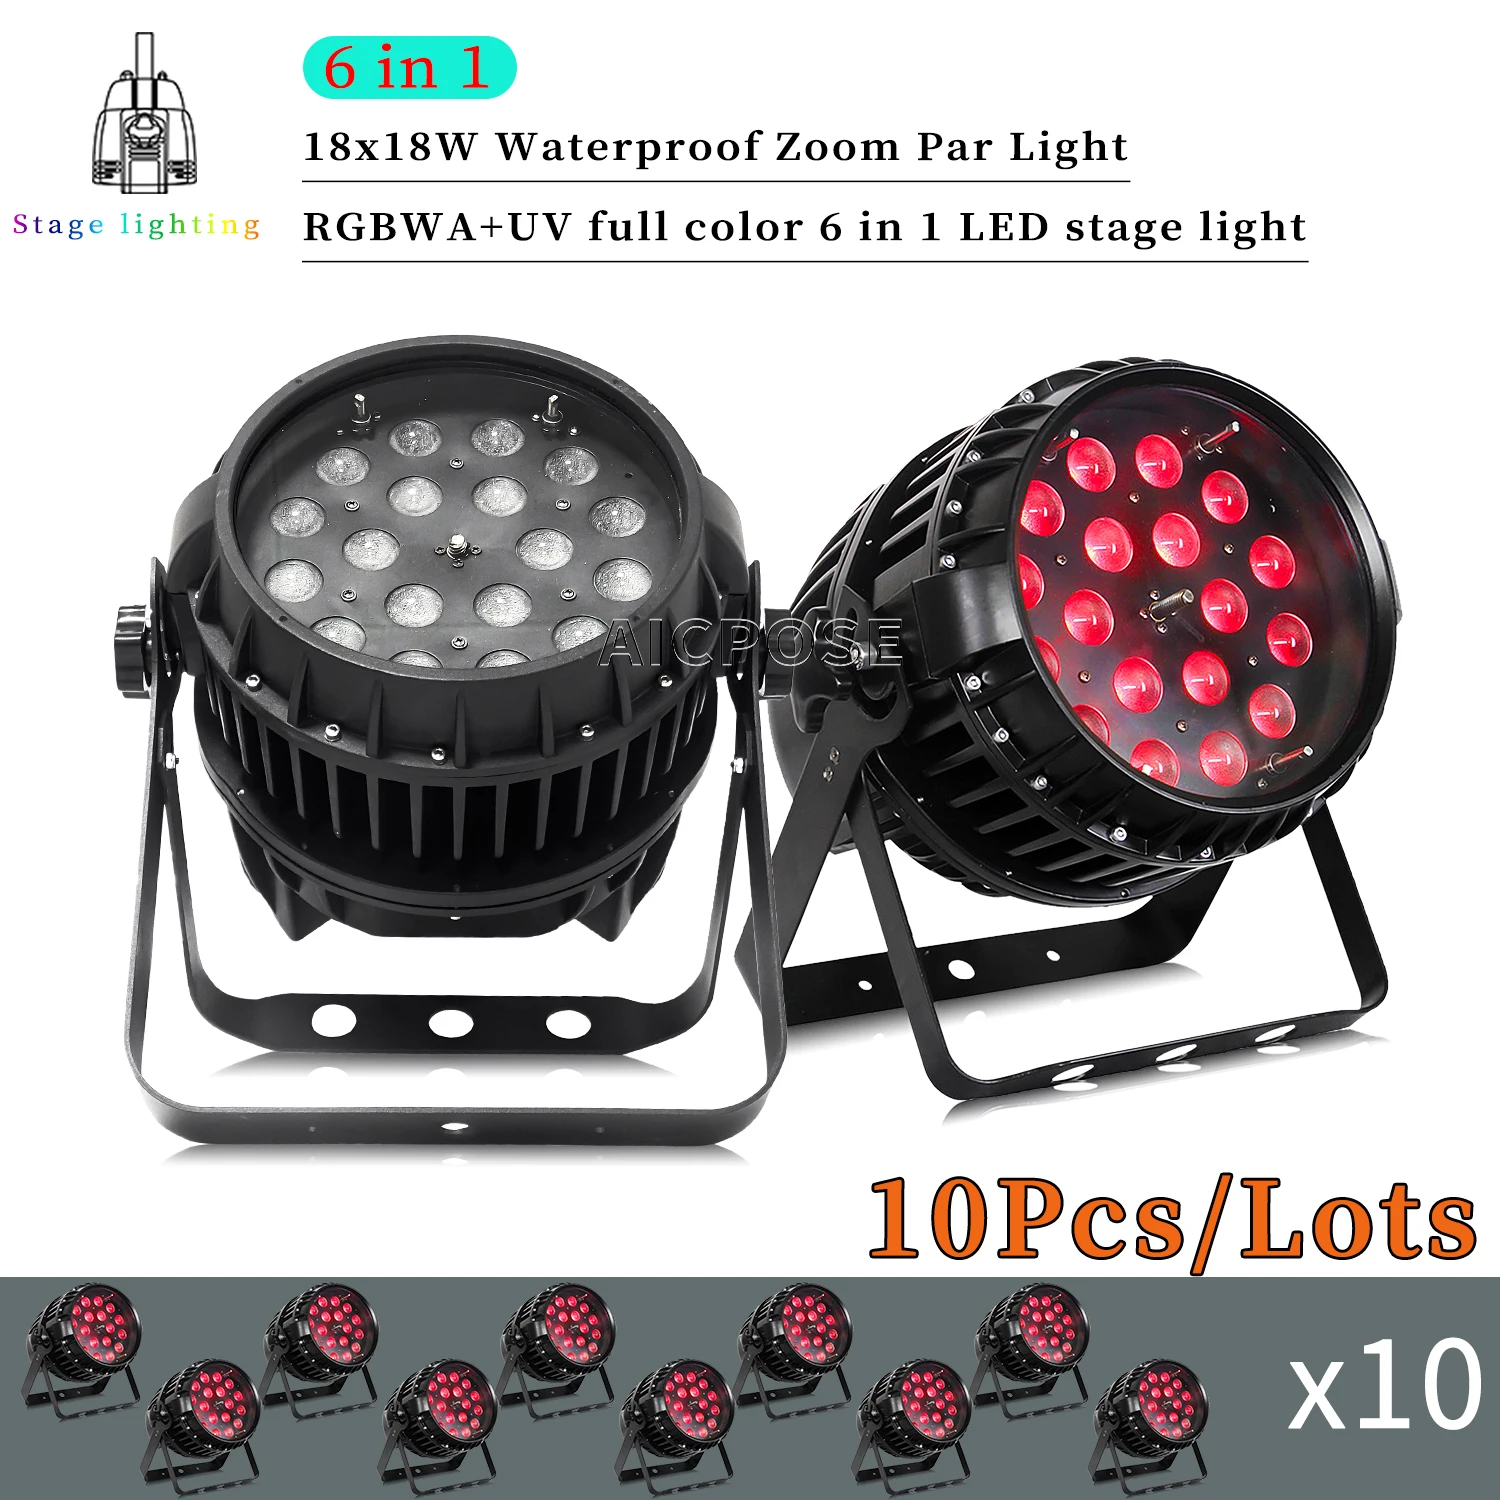 

10Pcs/Lots 18x12W RGBW/18x18W RGBWA+UV 6 in 1 LED Par Light IP65 Waterproof Zoom Stage Light DMX Control DJ Disco Equipment